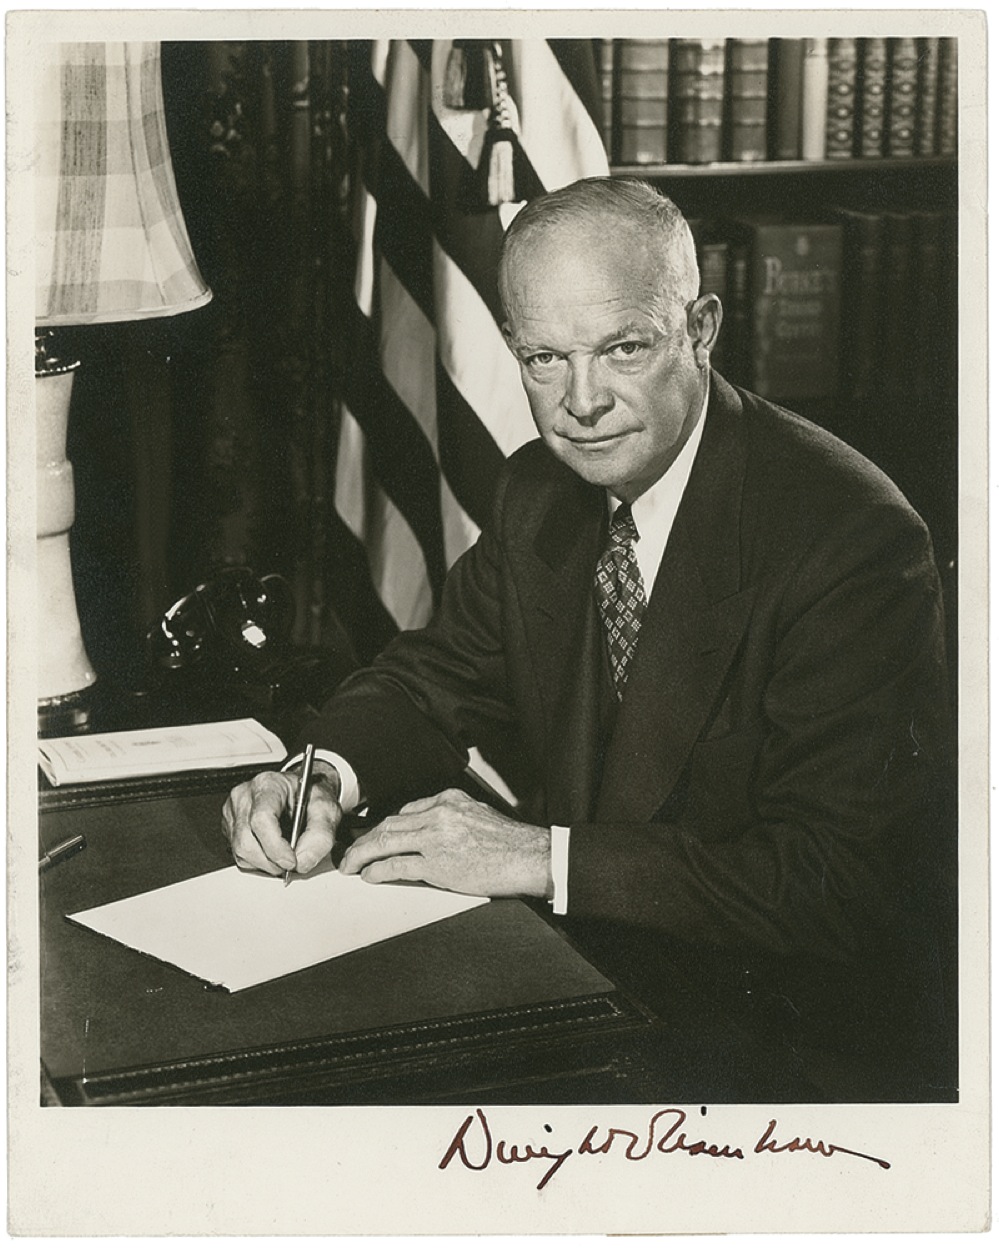 Lot #22 Dwight D. Eisenhower